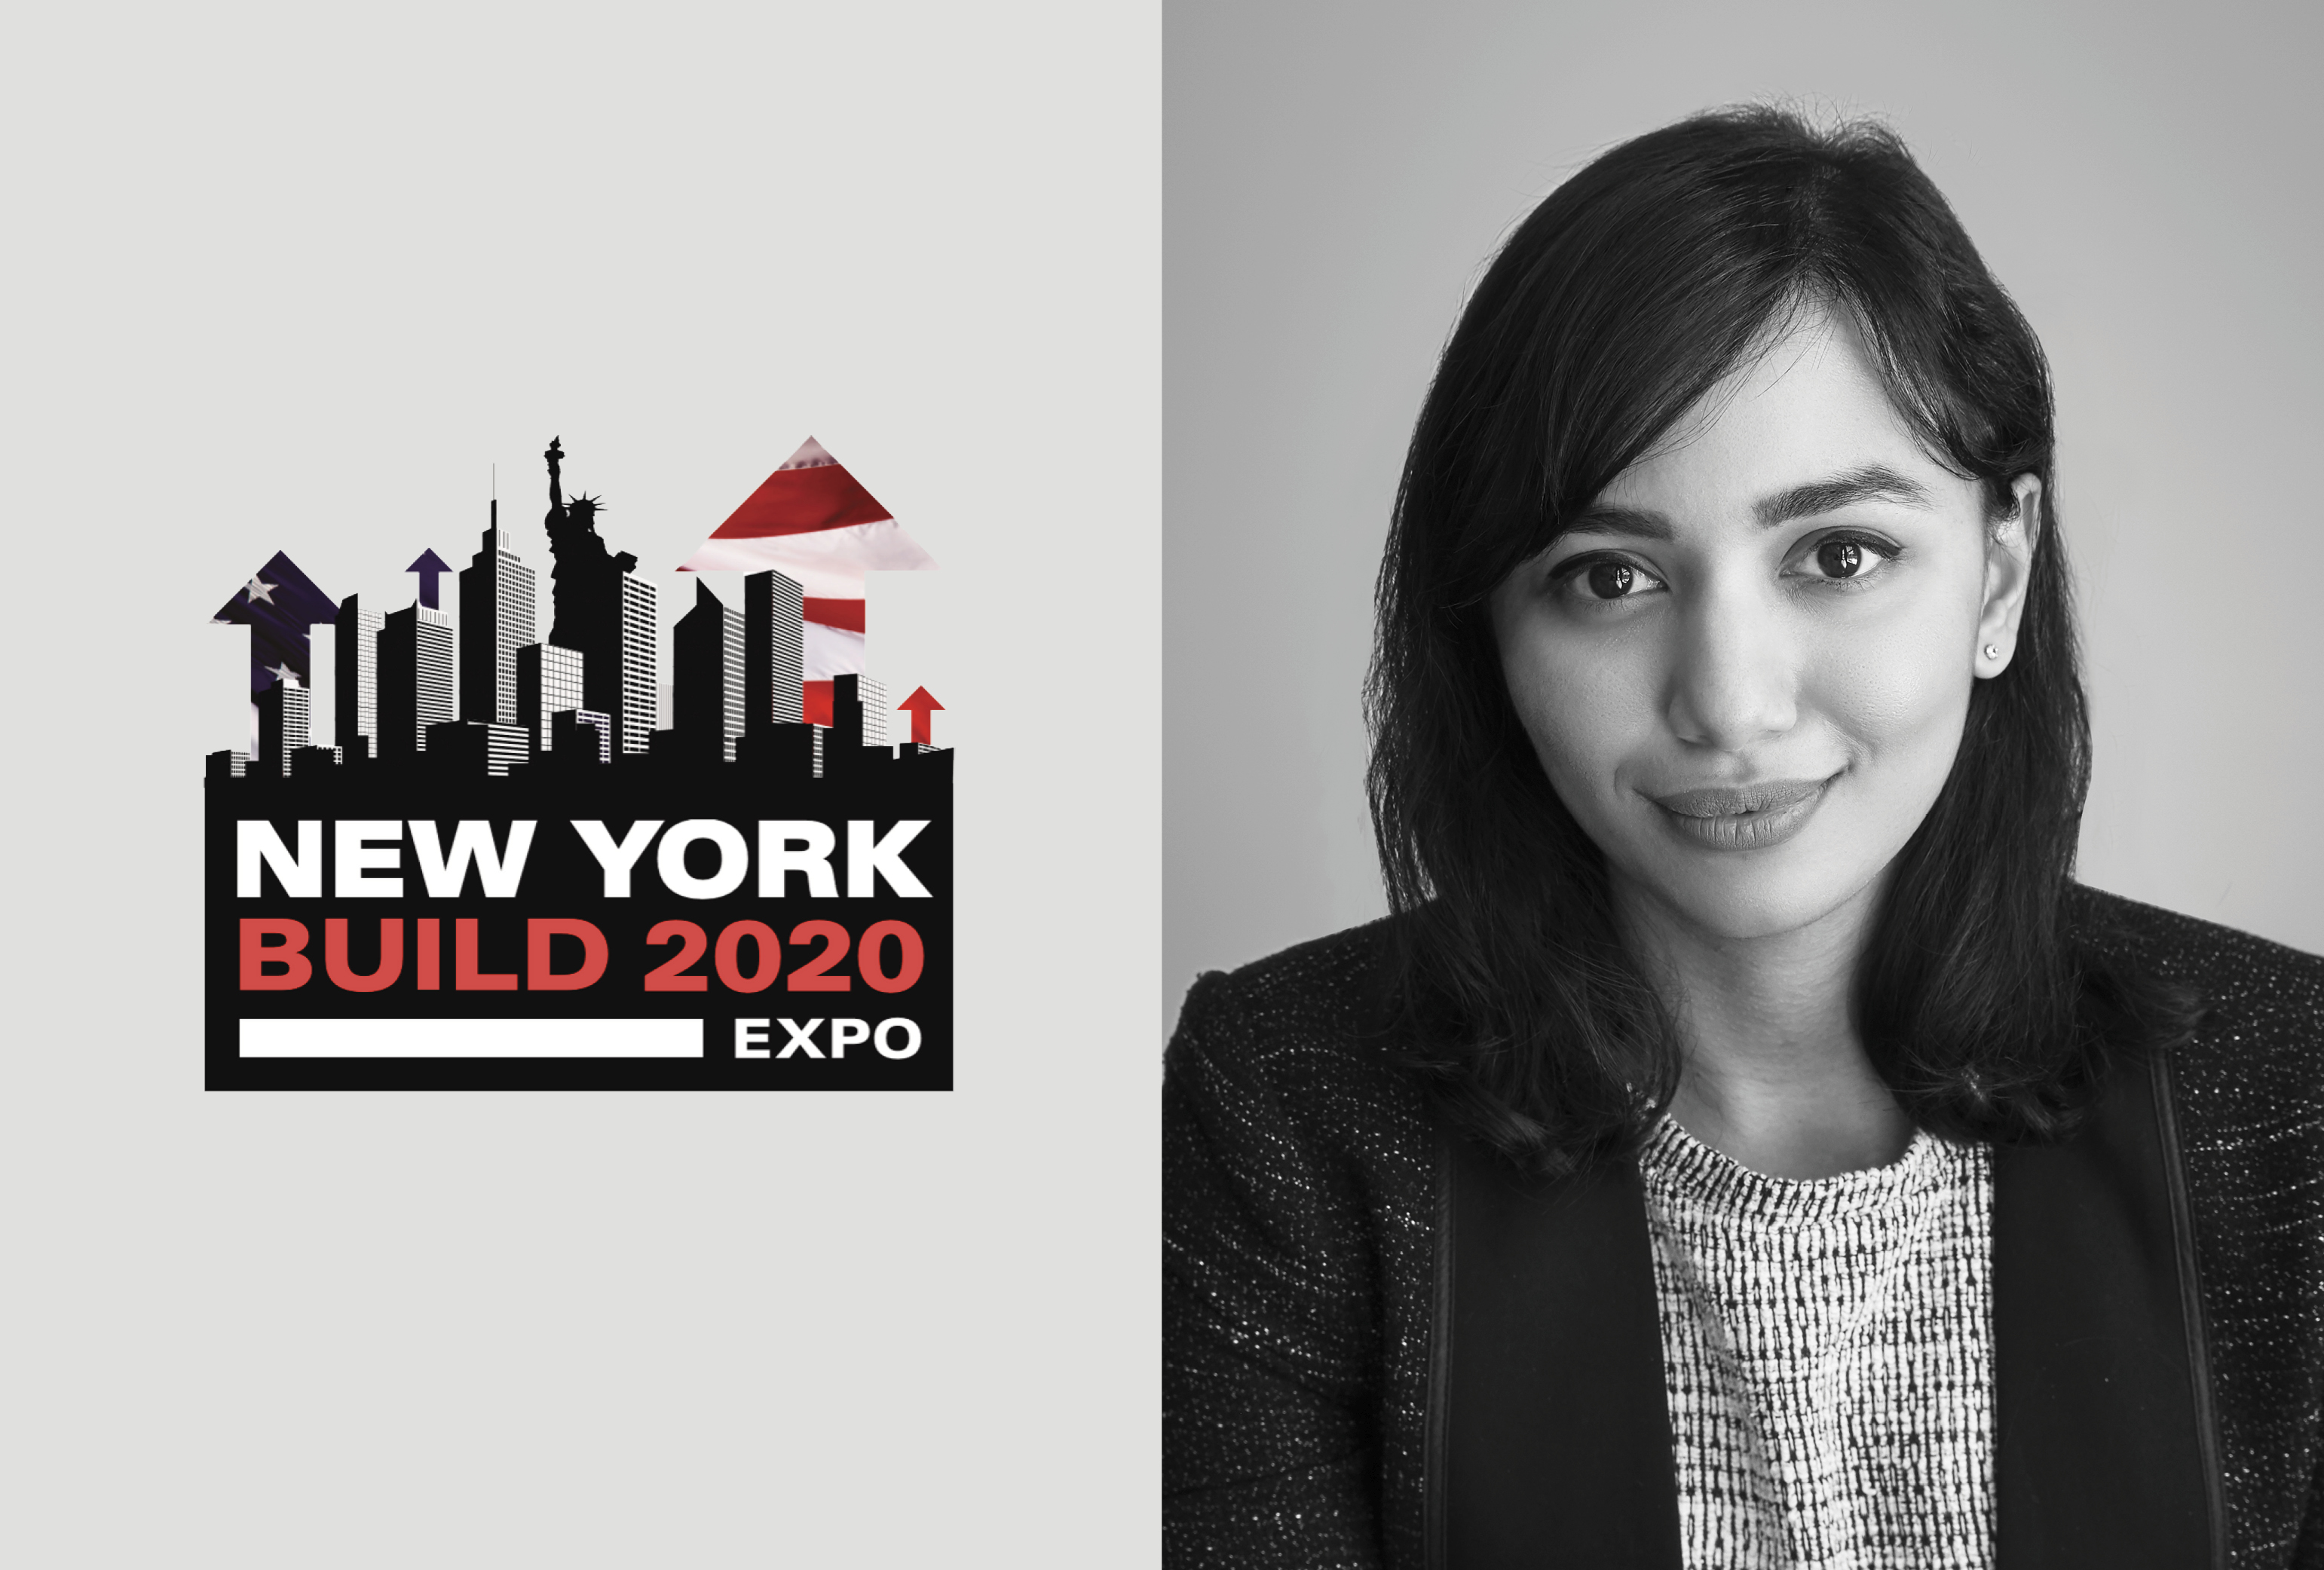 Kavyashri Cherala to Speak at New York Build Expo